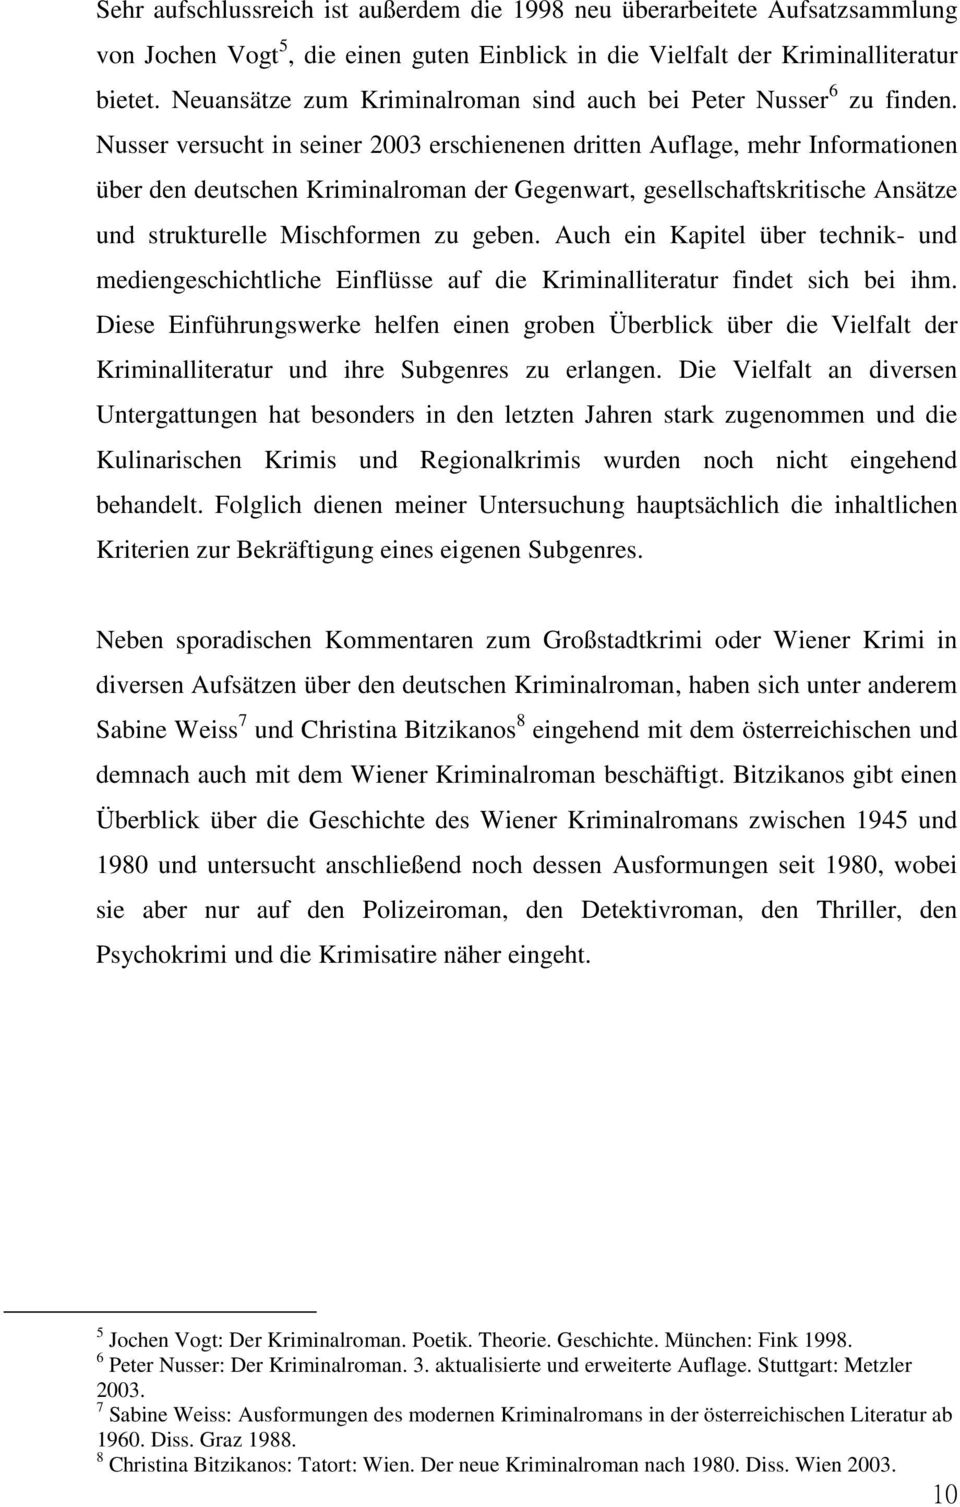 Nusser versucht in seiner 2003 erschienenen dritten Auflage, mehr Informationen über den deutschen Kriminalroman der Gegenwart, gesellschaftskritische Ansätze und strukturelle Mischformen zu geben.